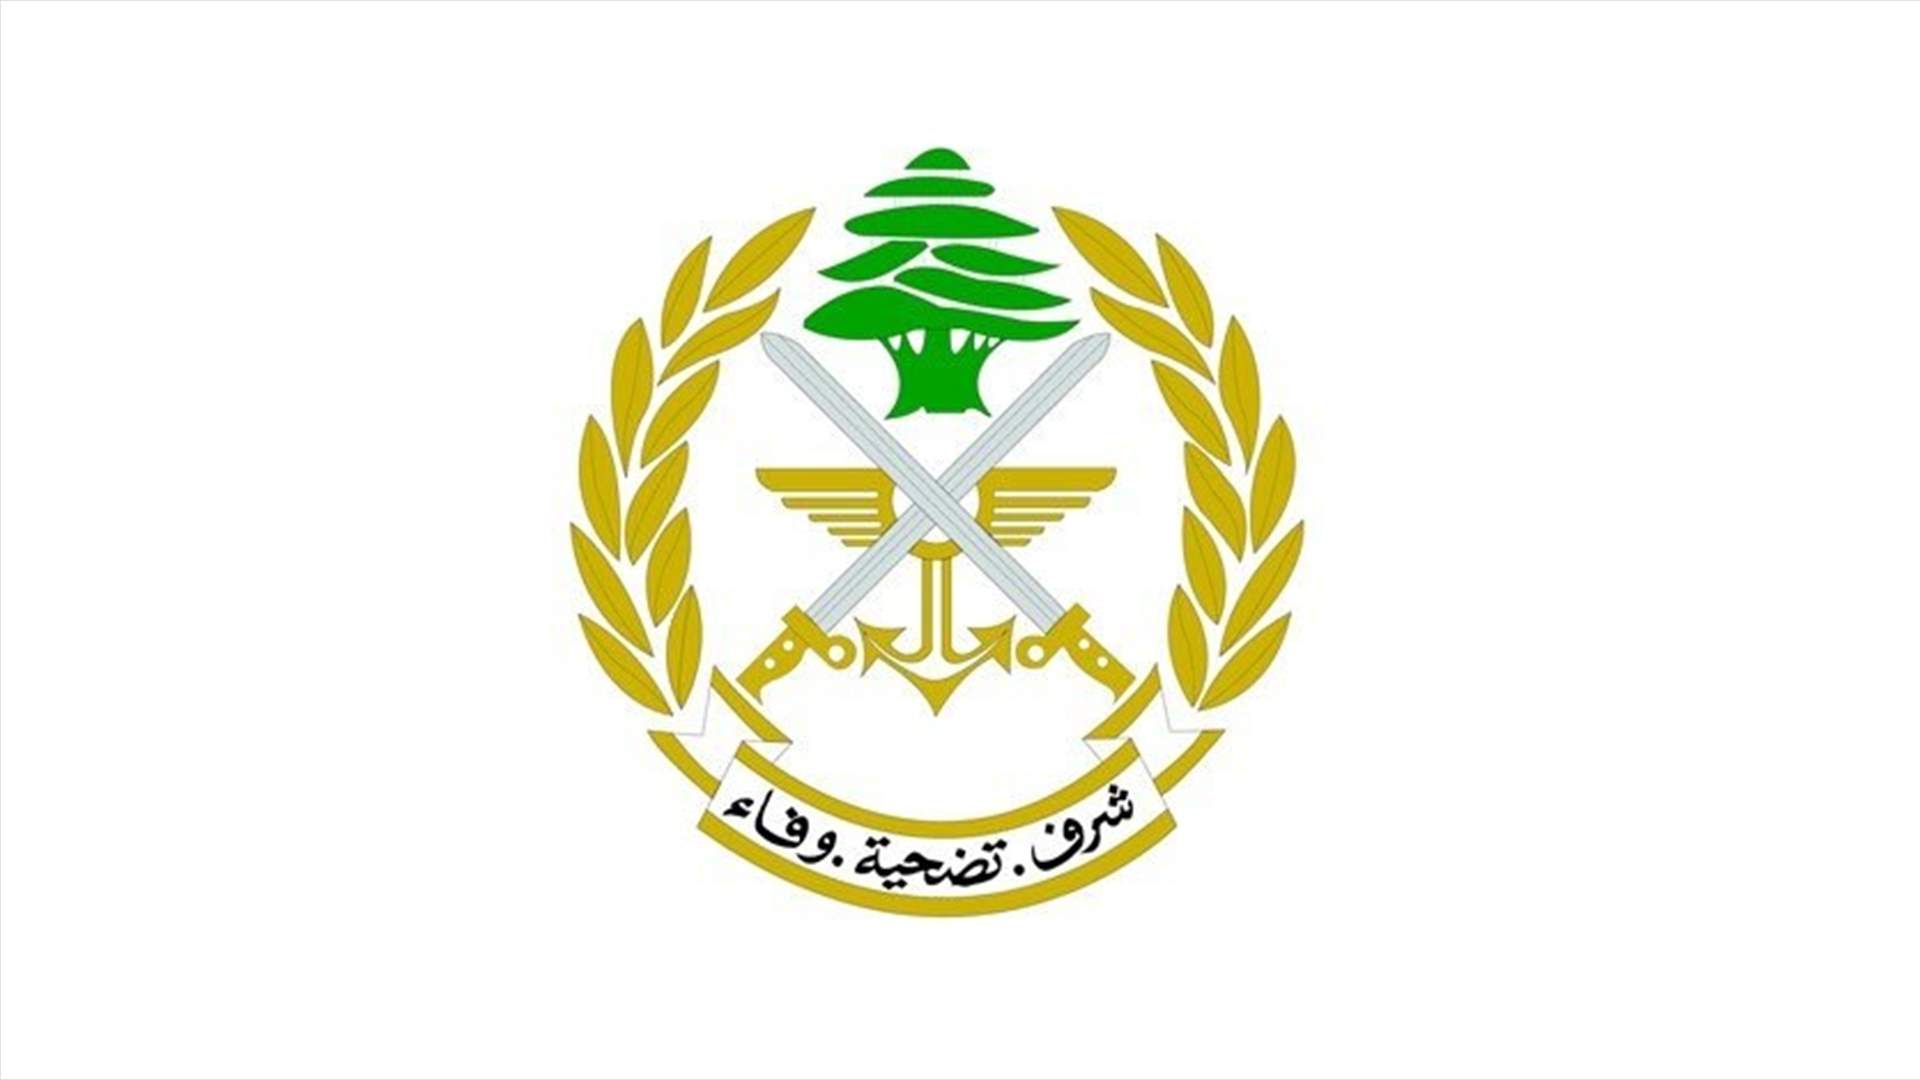 الجيش: توقيف مواطن في منطقة حوش السيد علي - الهرمل